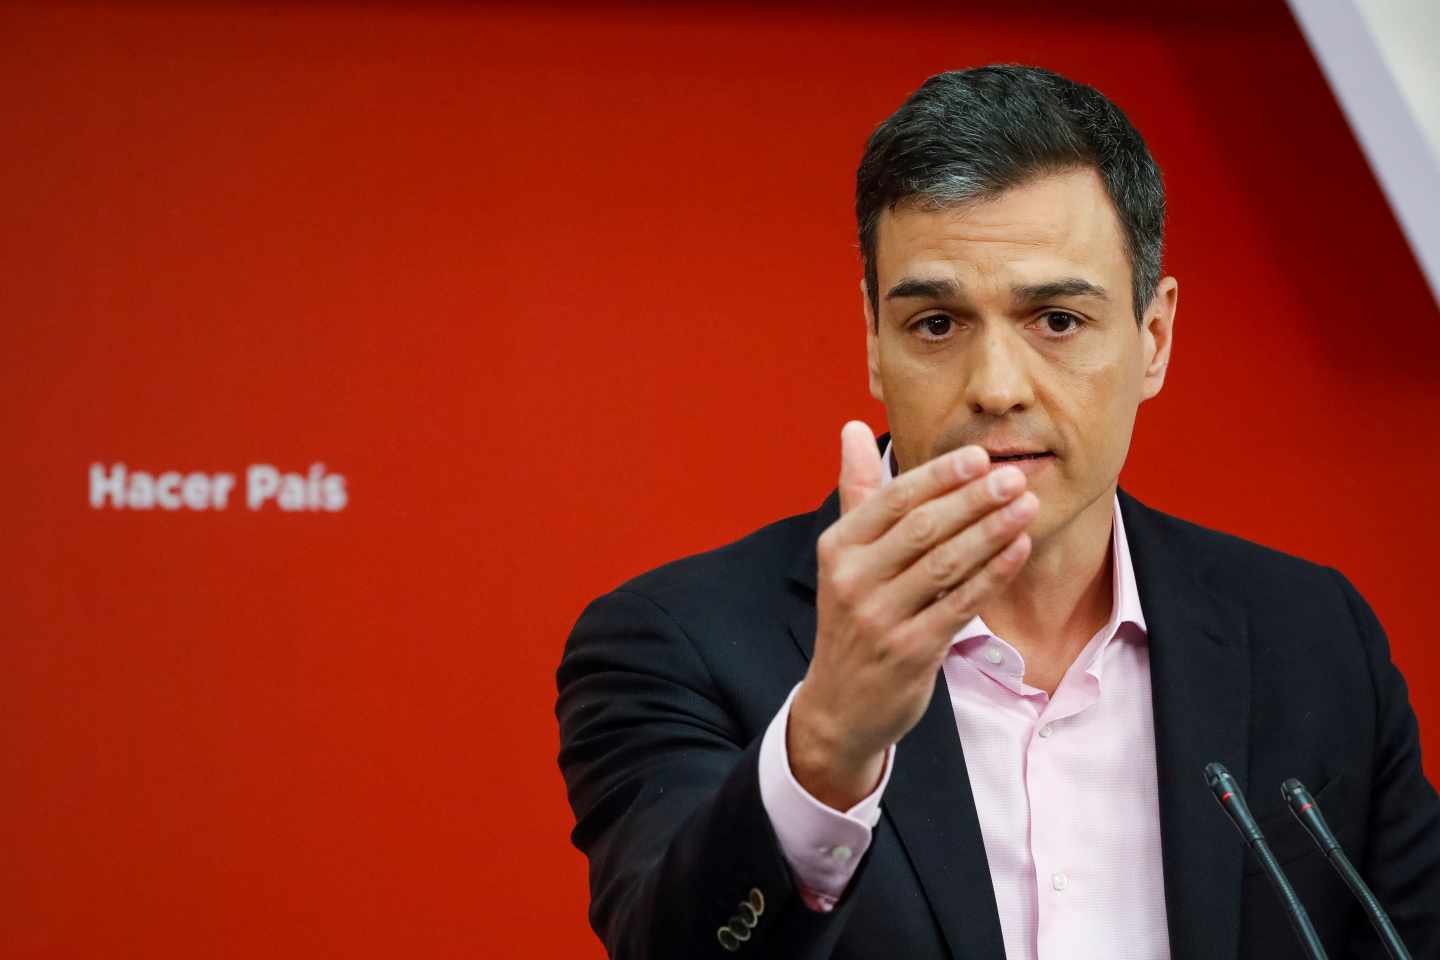 Sánchez apela a la "responsabilidad" de los 350 diputados: "Está en juego la confianza en la política"